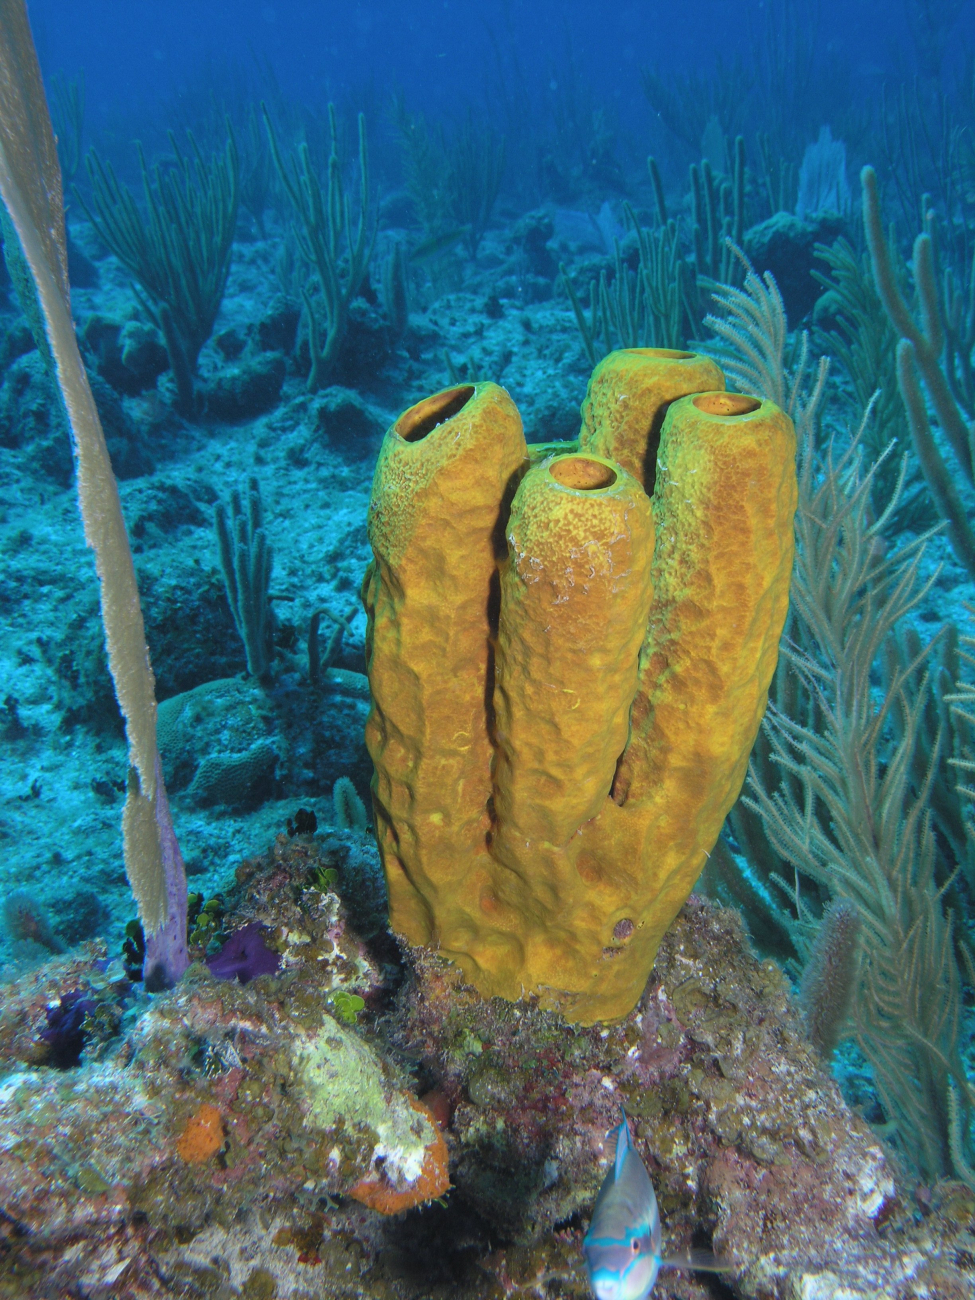 Yellow tube sponge